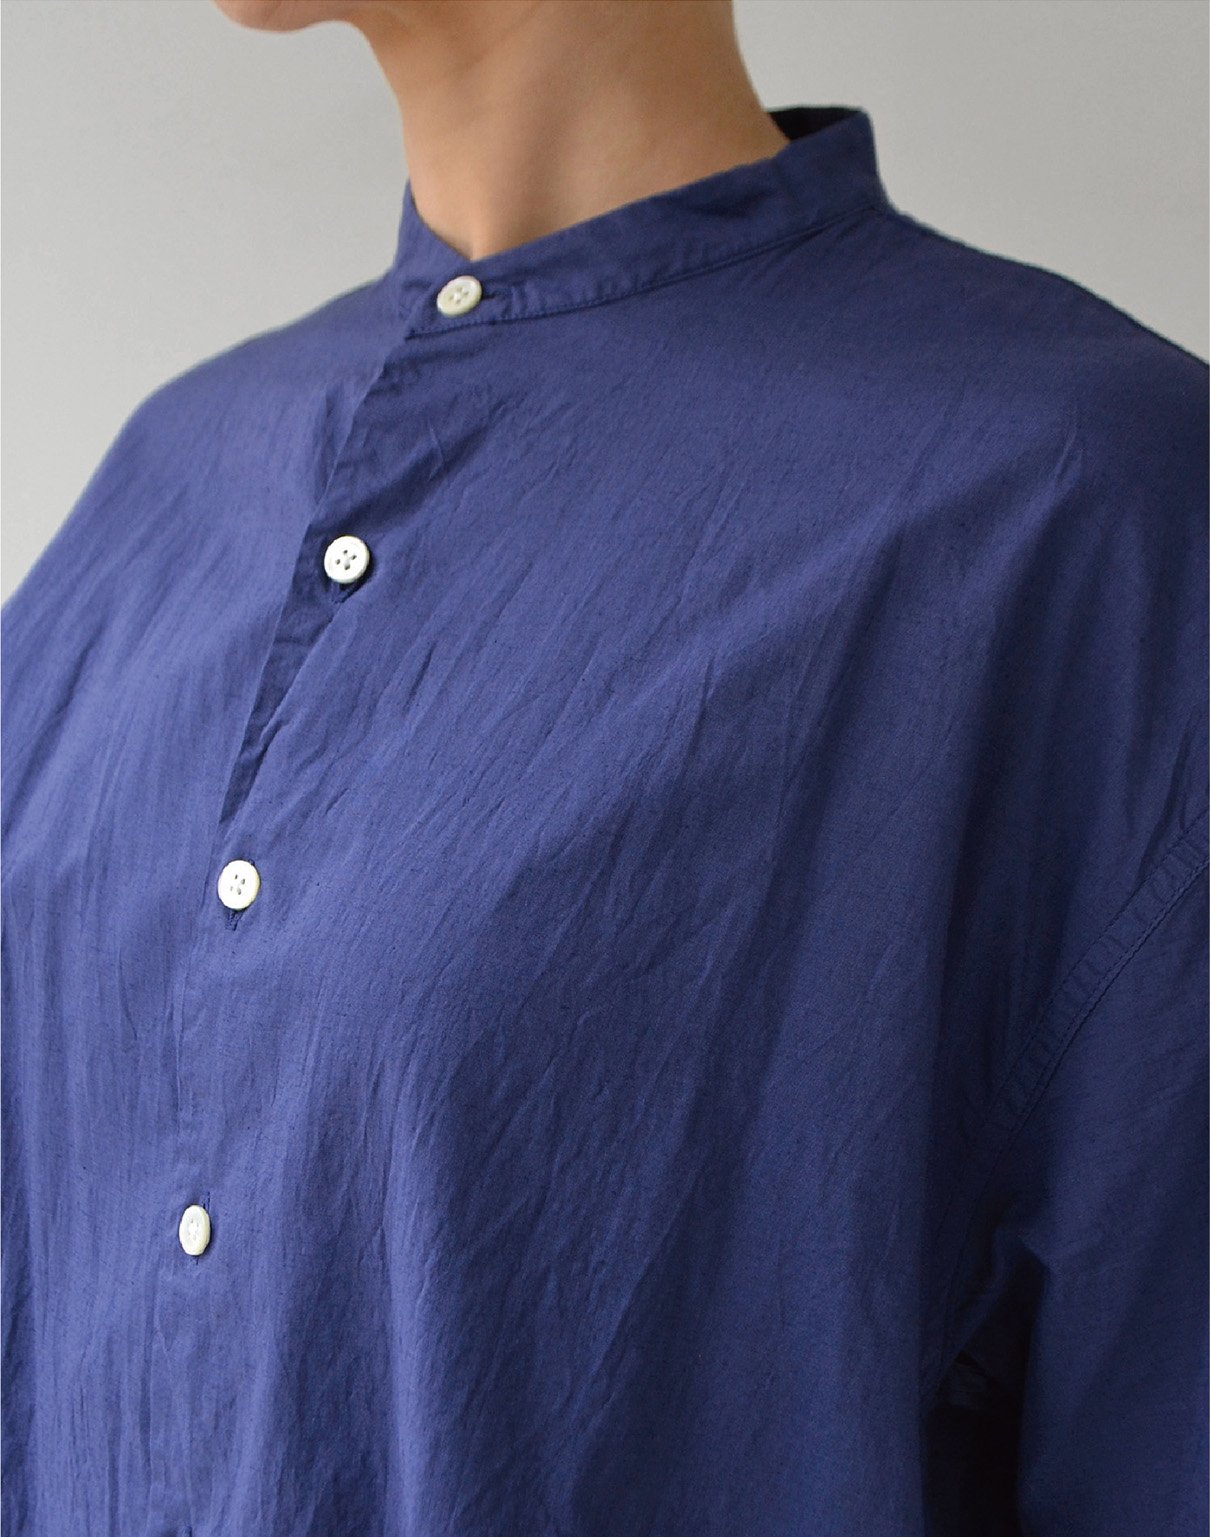 holk S/S shirt blue